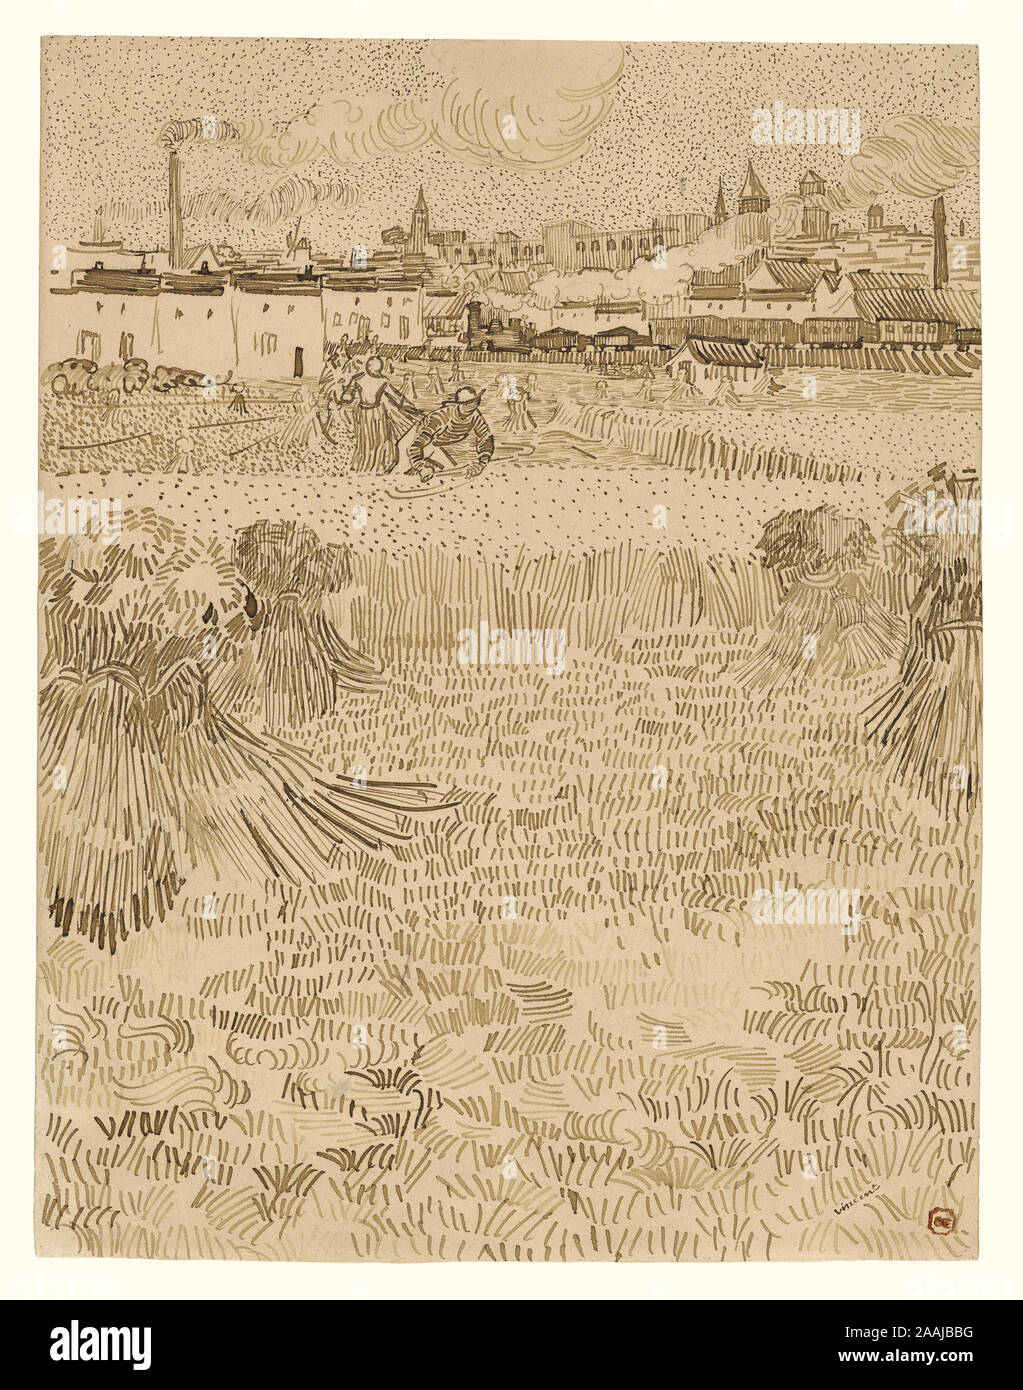 Arles : vue depuis le blé ; Vincent van Gogh (Néerlandais, 1853 - 1890), Arles, France, 1888 ; Reed et plume et encre brune, 31,2 × 24,1 cm (12 1/2 x 9 5/16 in.) Banque D'Images